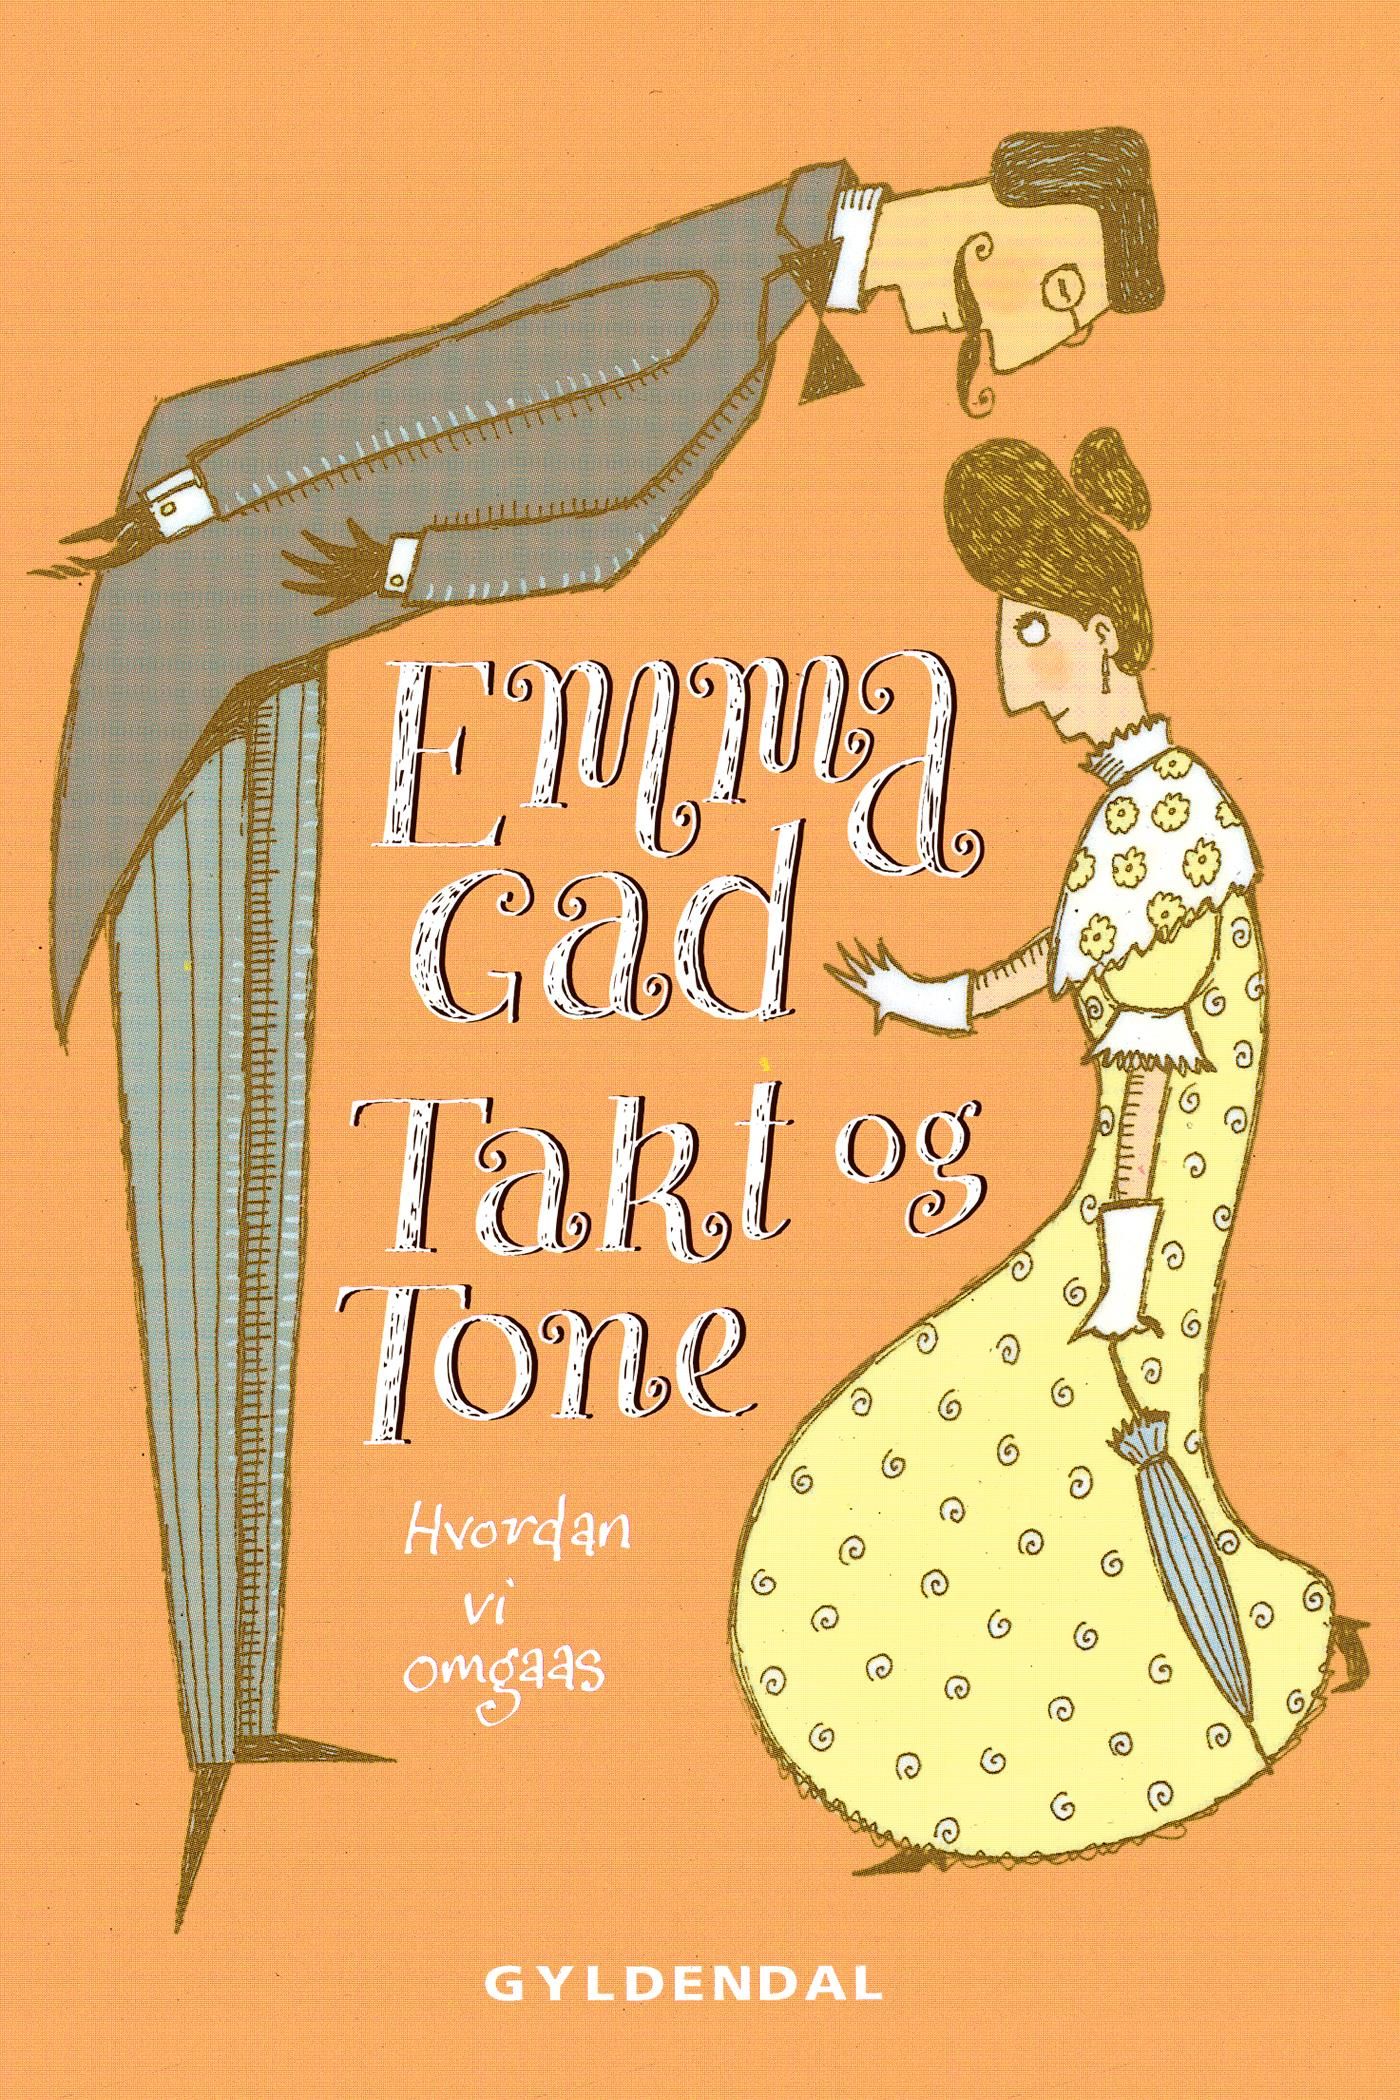 Takt og Tone, eBook by Emma Gad